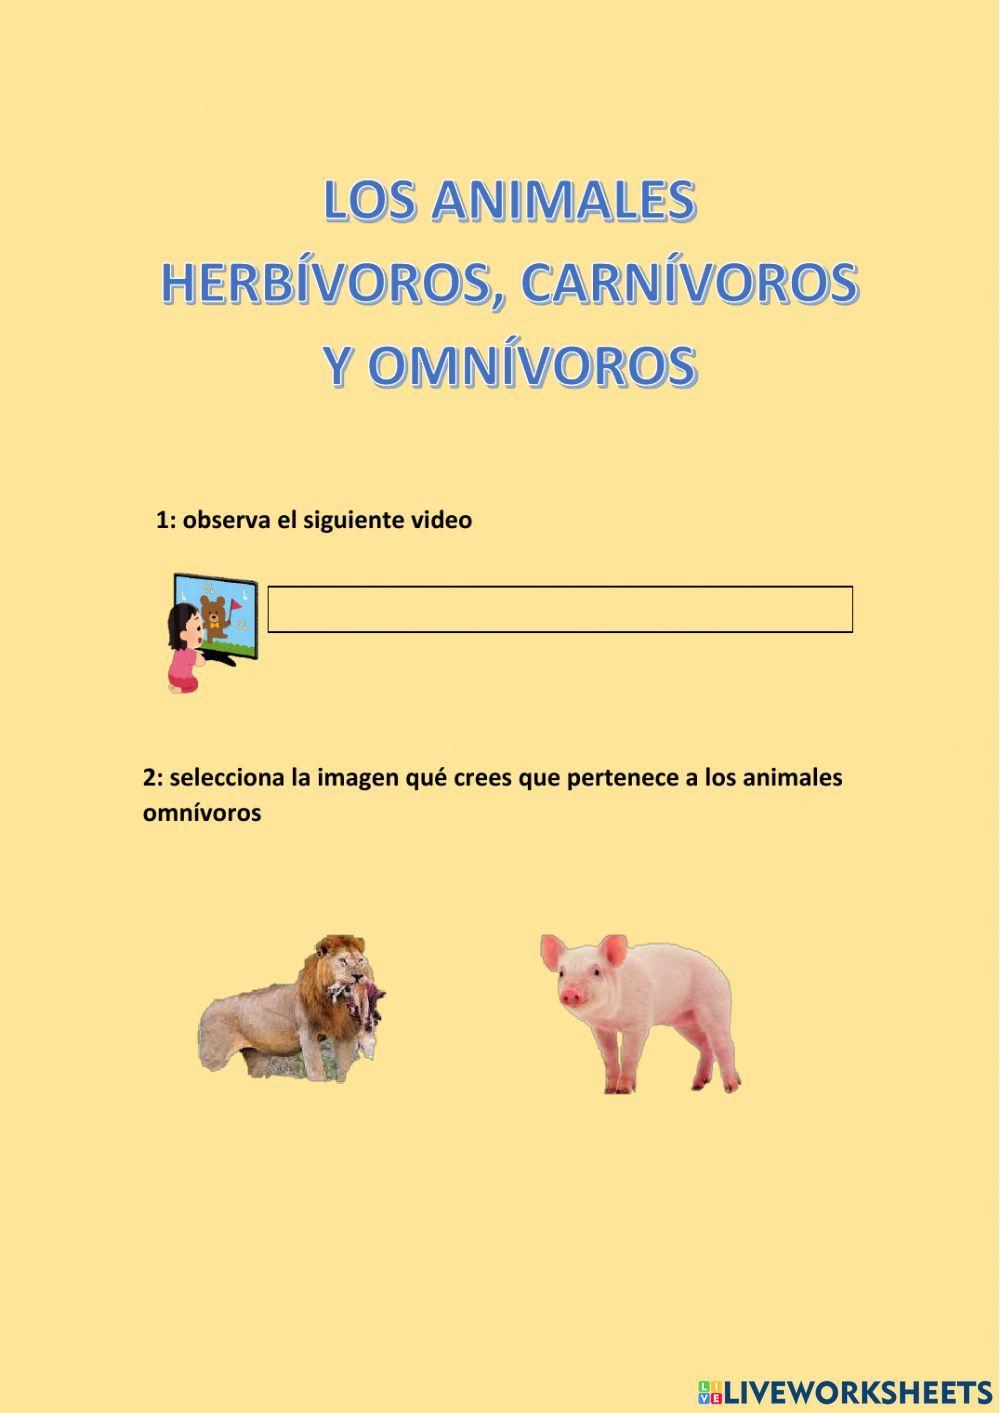 Os animales hervivoros, omnivoros y carnivoros